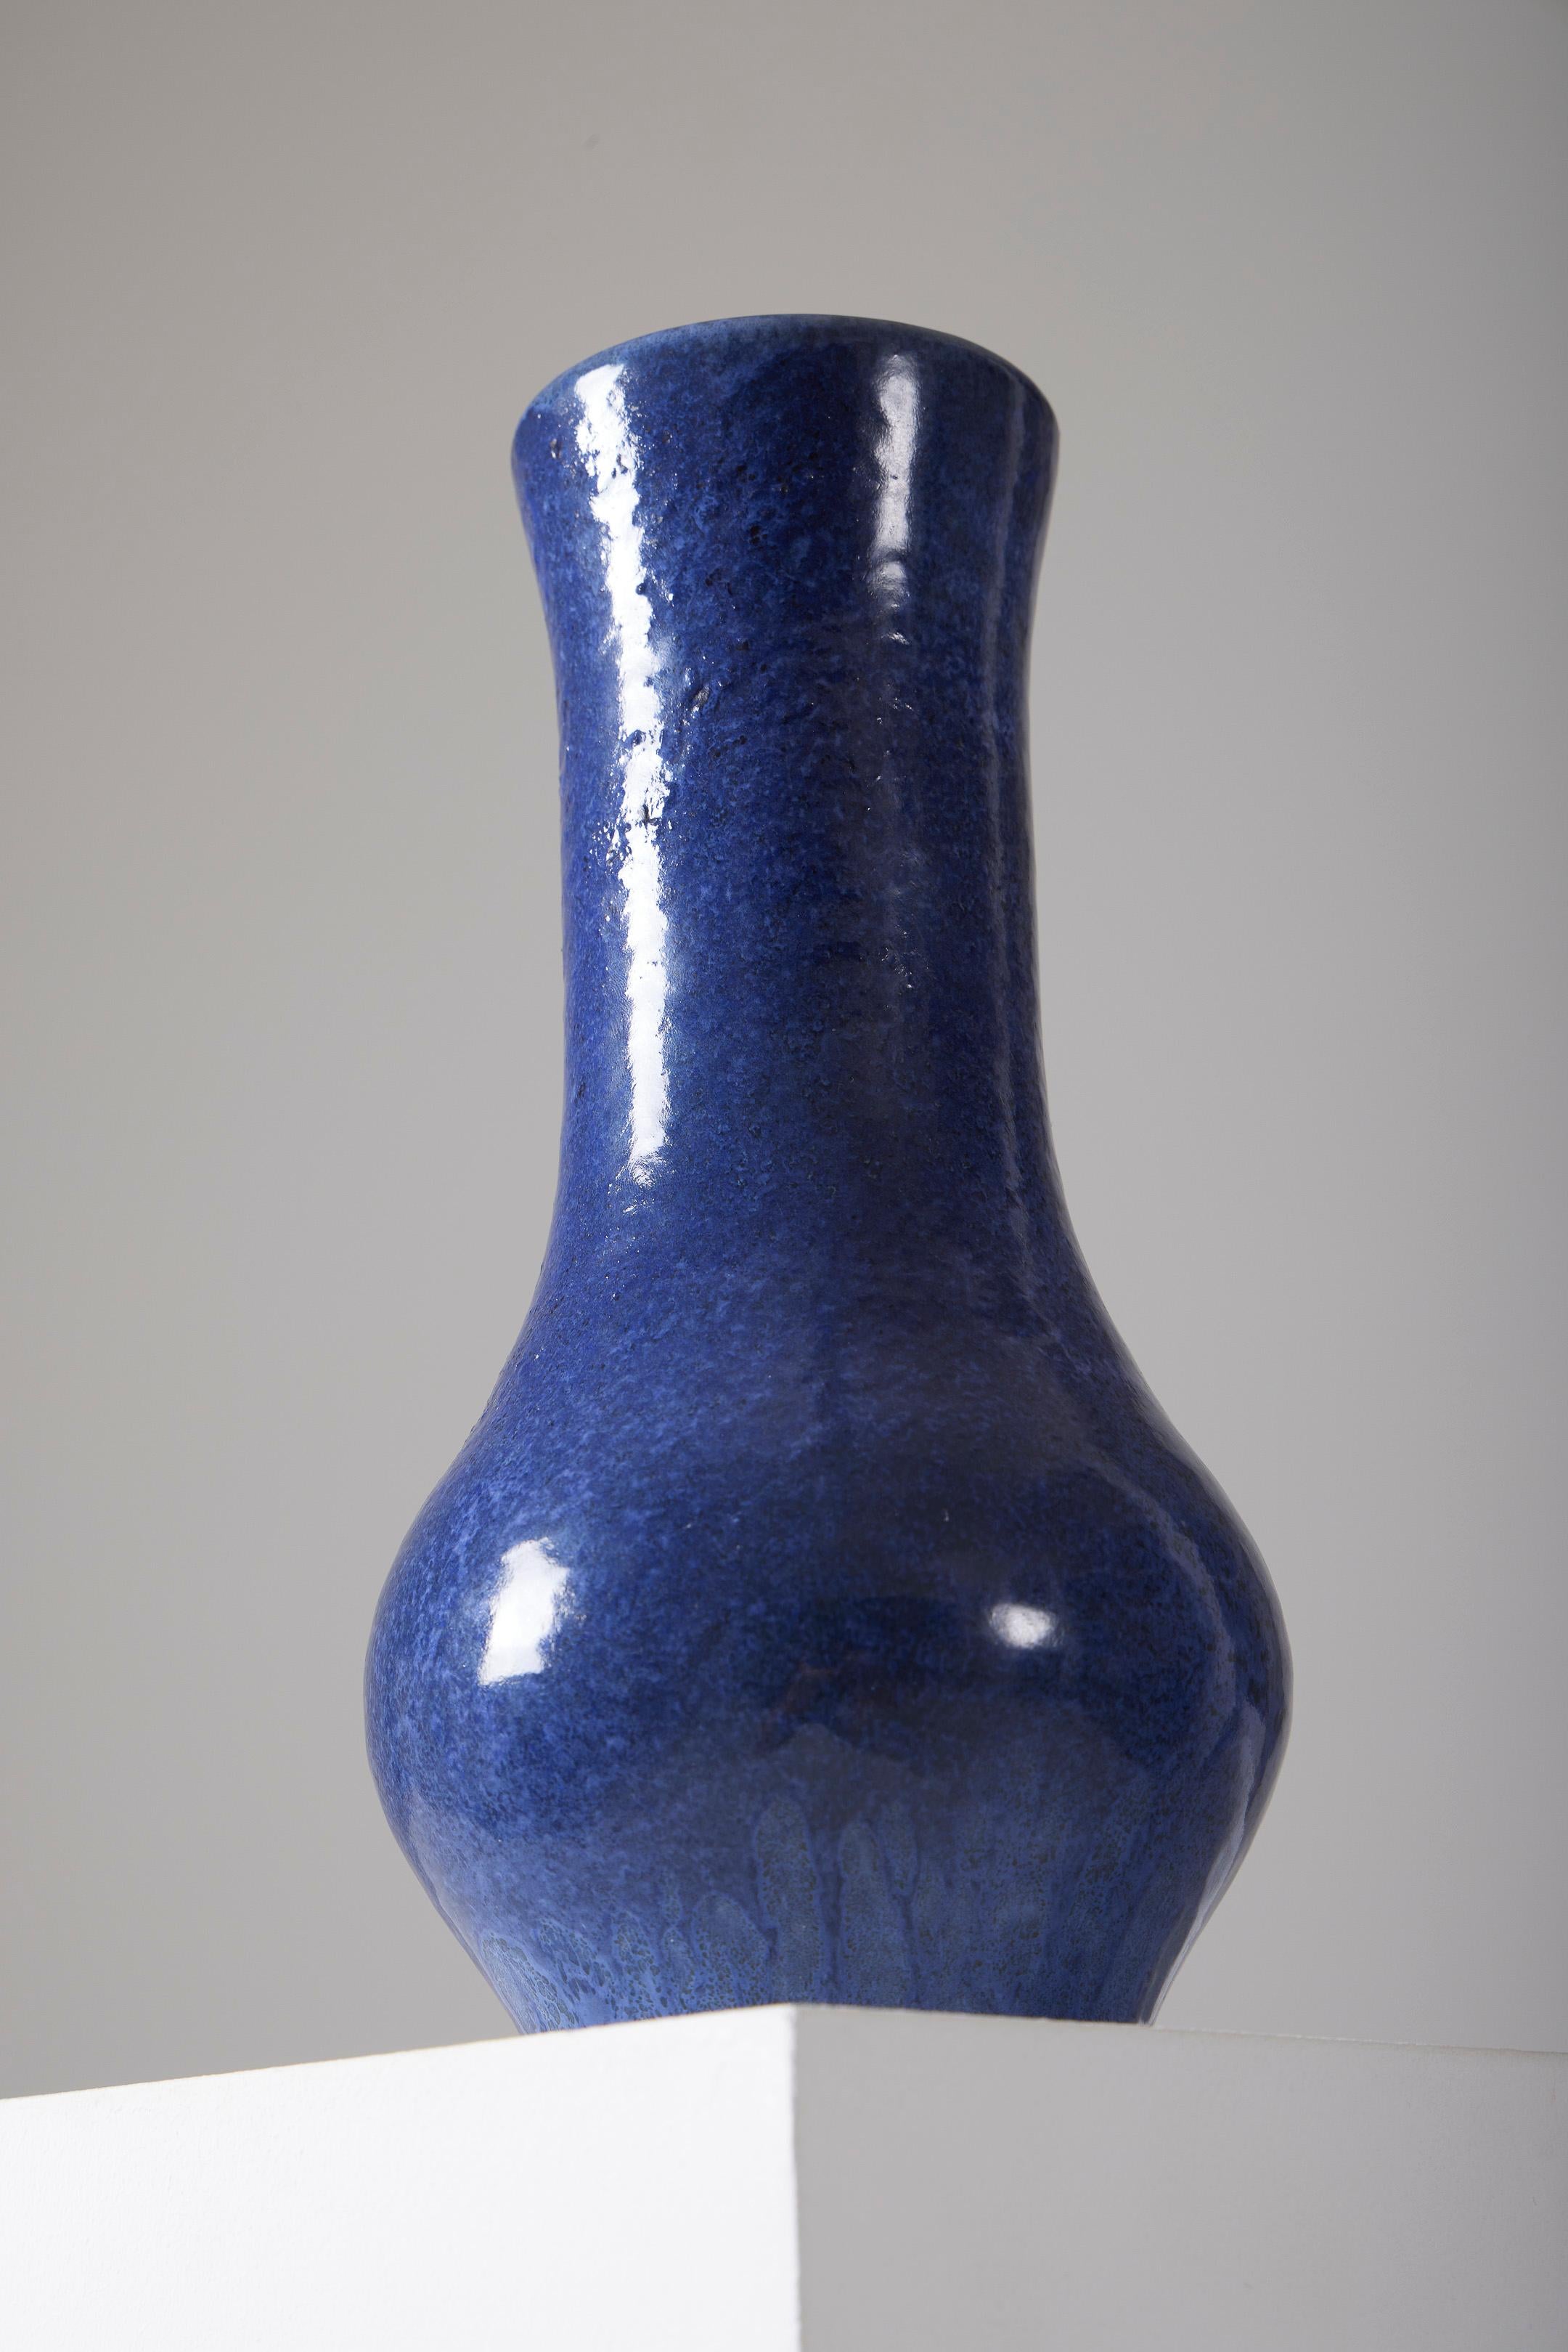 Madoura Keramikvase, blau glasiert, schöne Patina aus den 1950er Jahren. Auf der Rückseite signiert. Ausgezeichneter Zustand.
LP3046